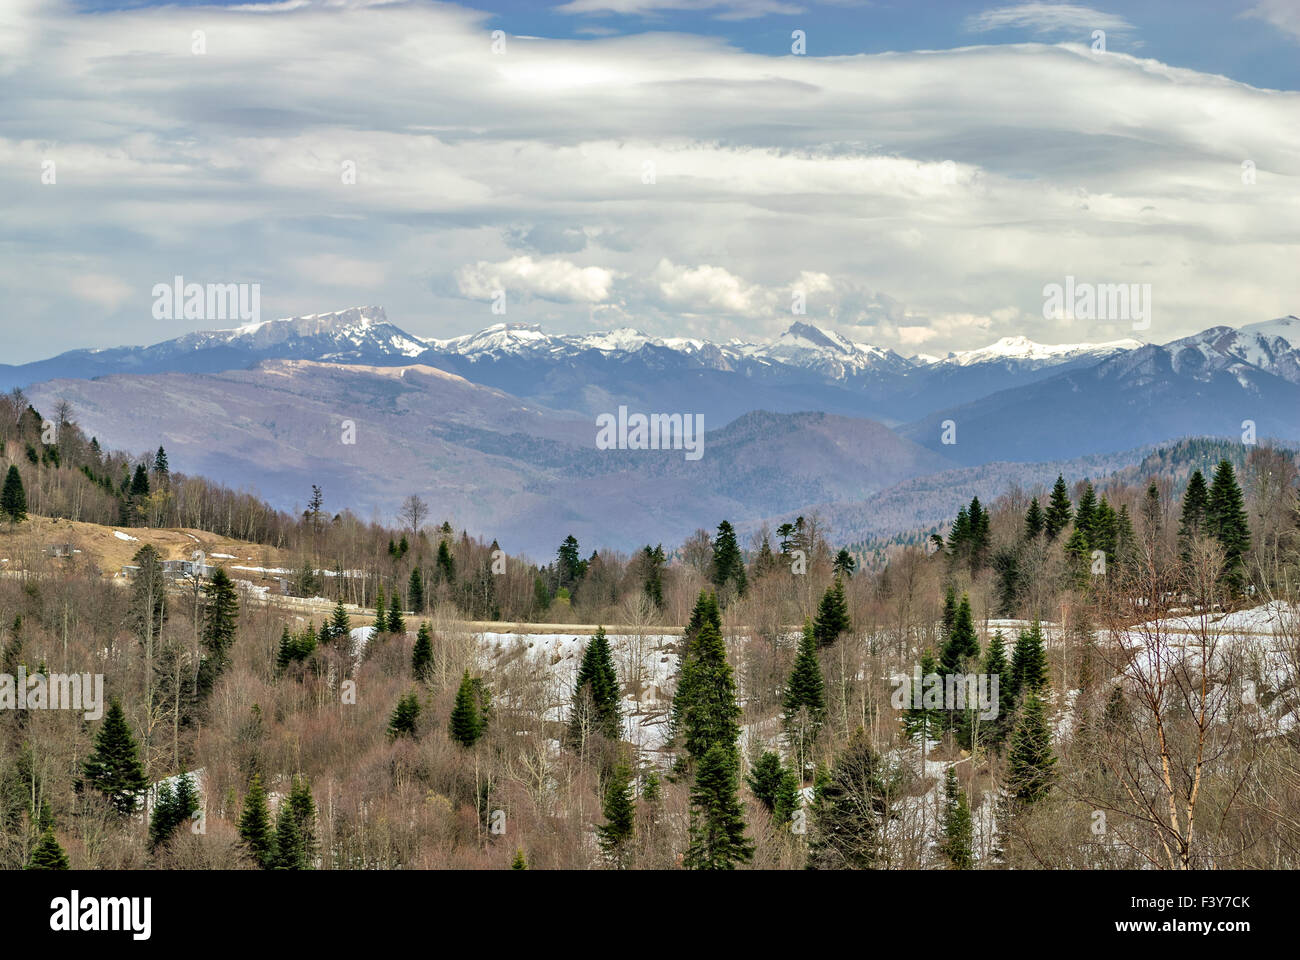 Paysage de montagne avec des pics de neige Banque D'Images